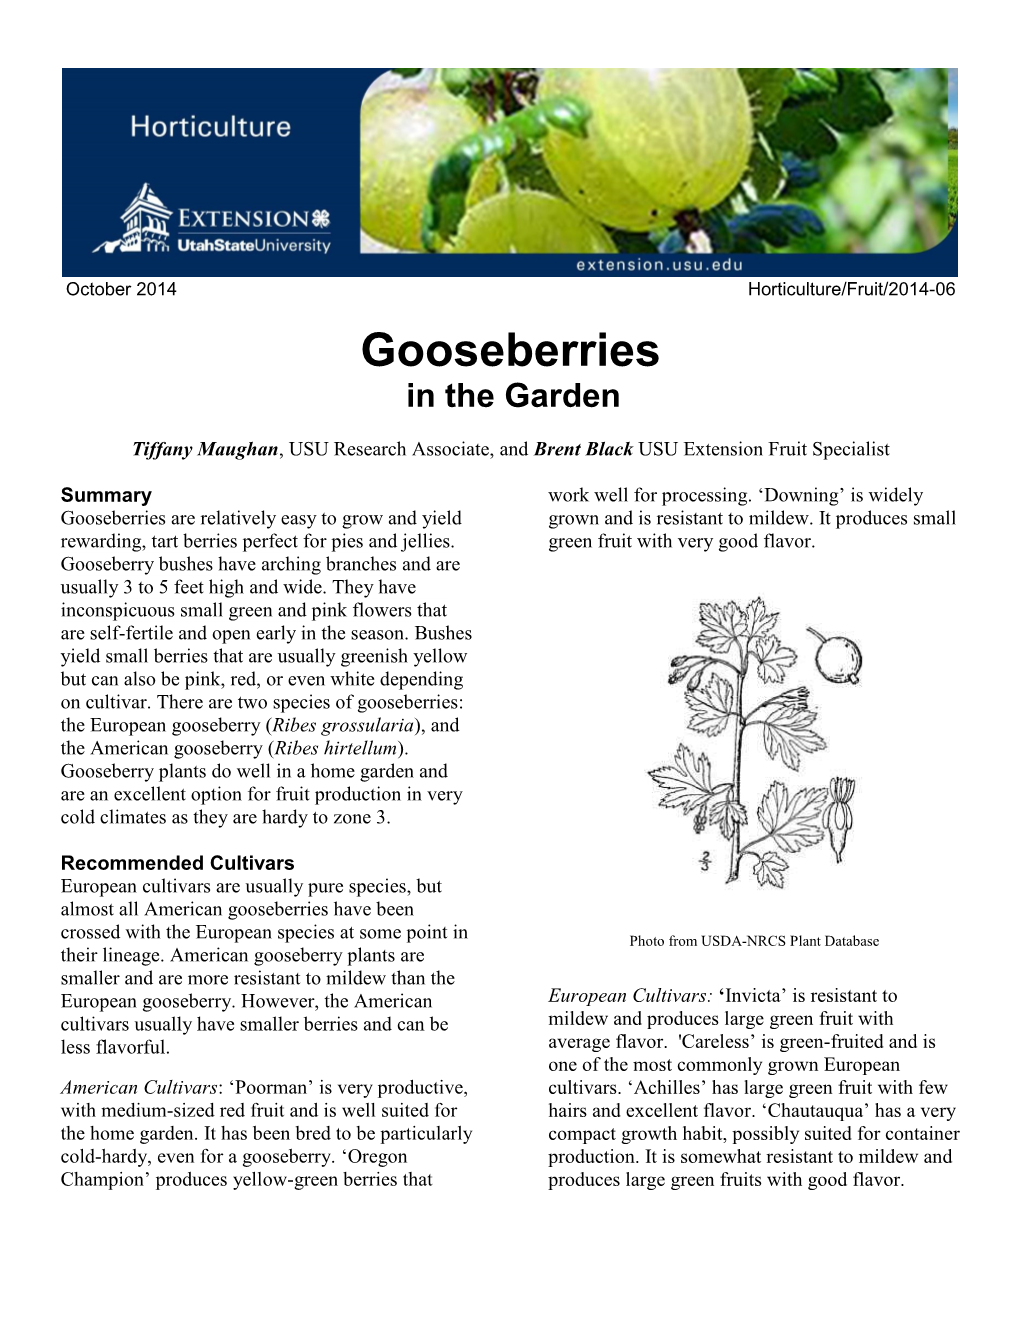 Gooseberries in the Garden